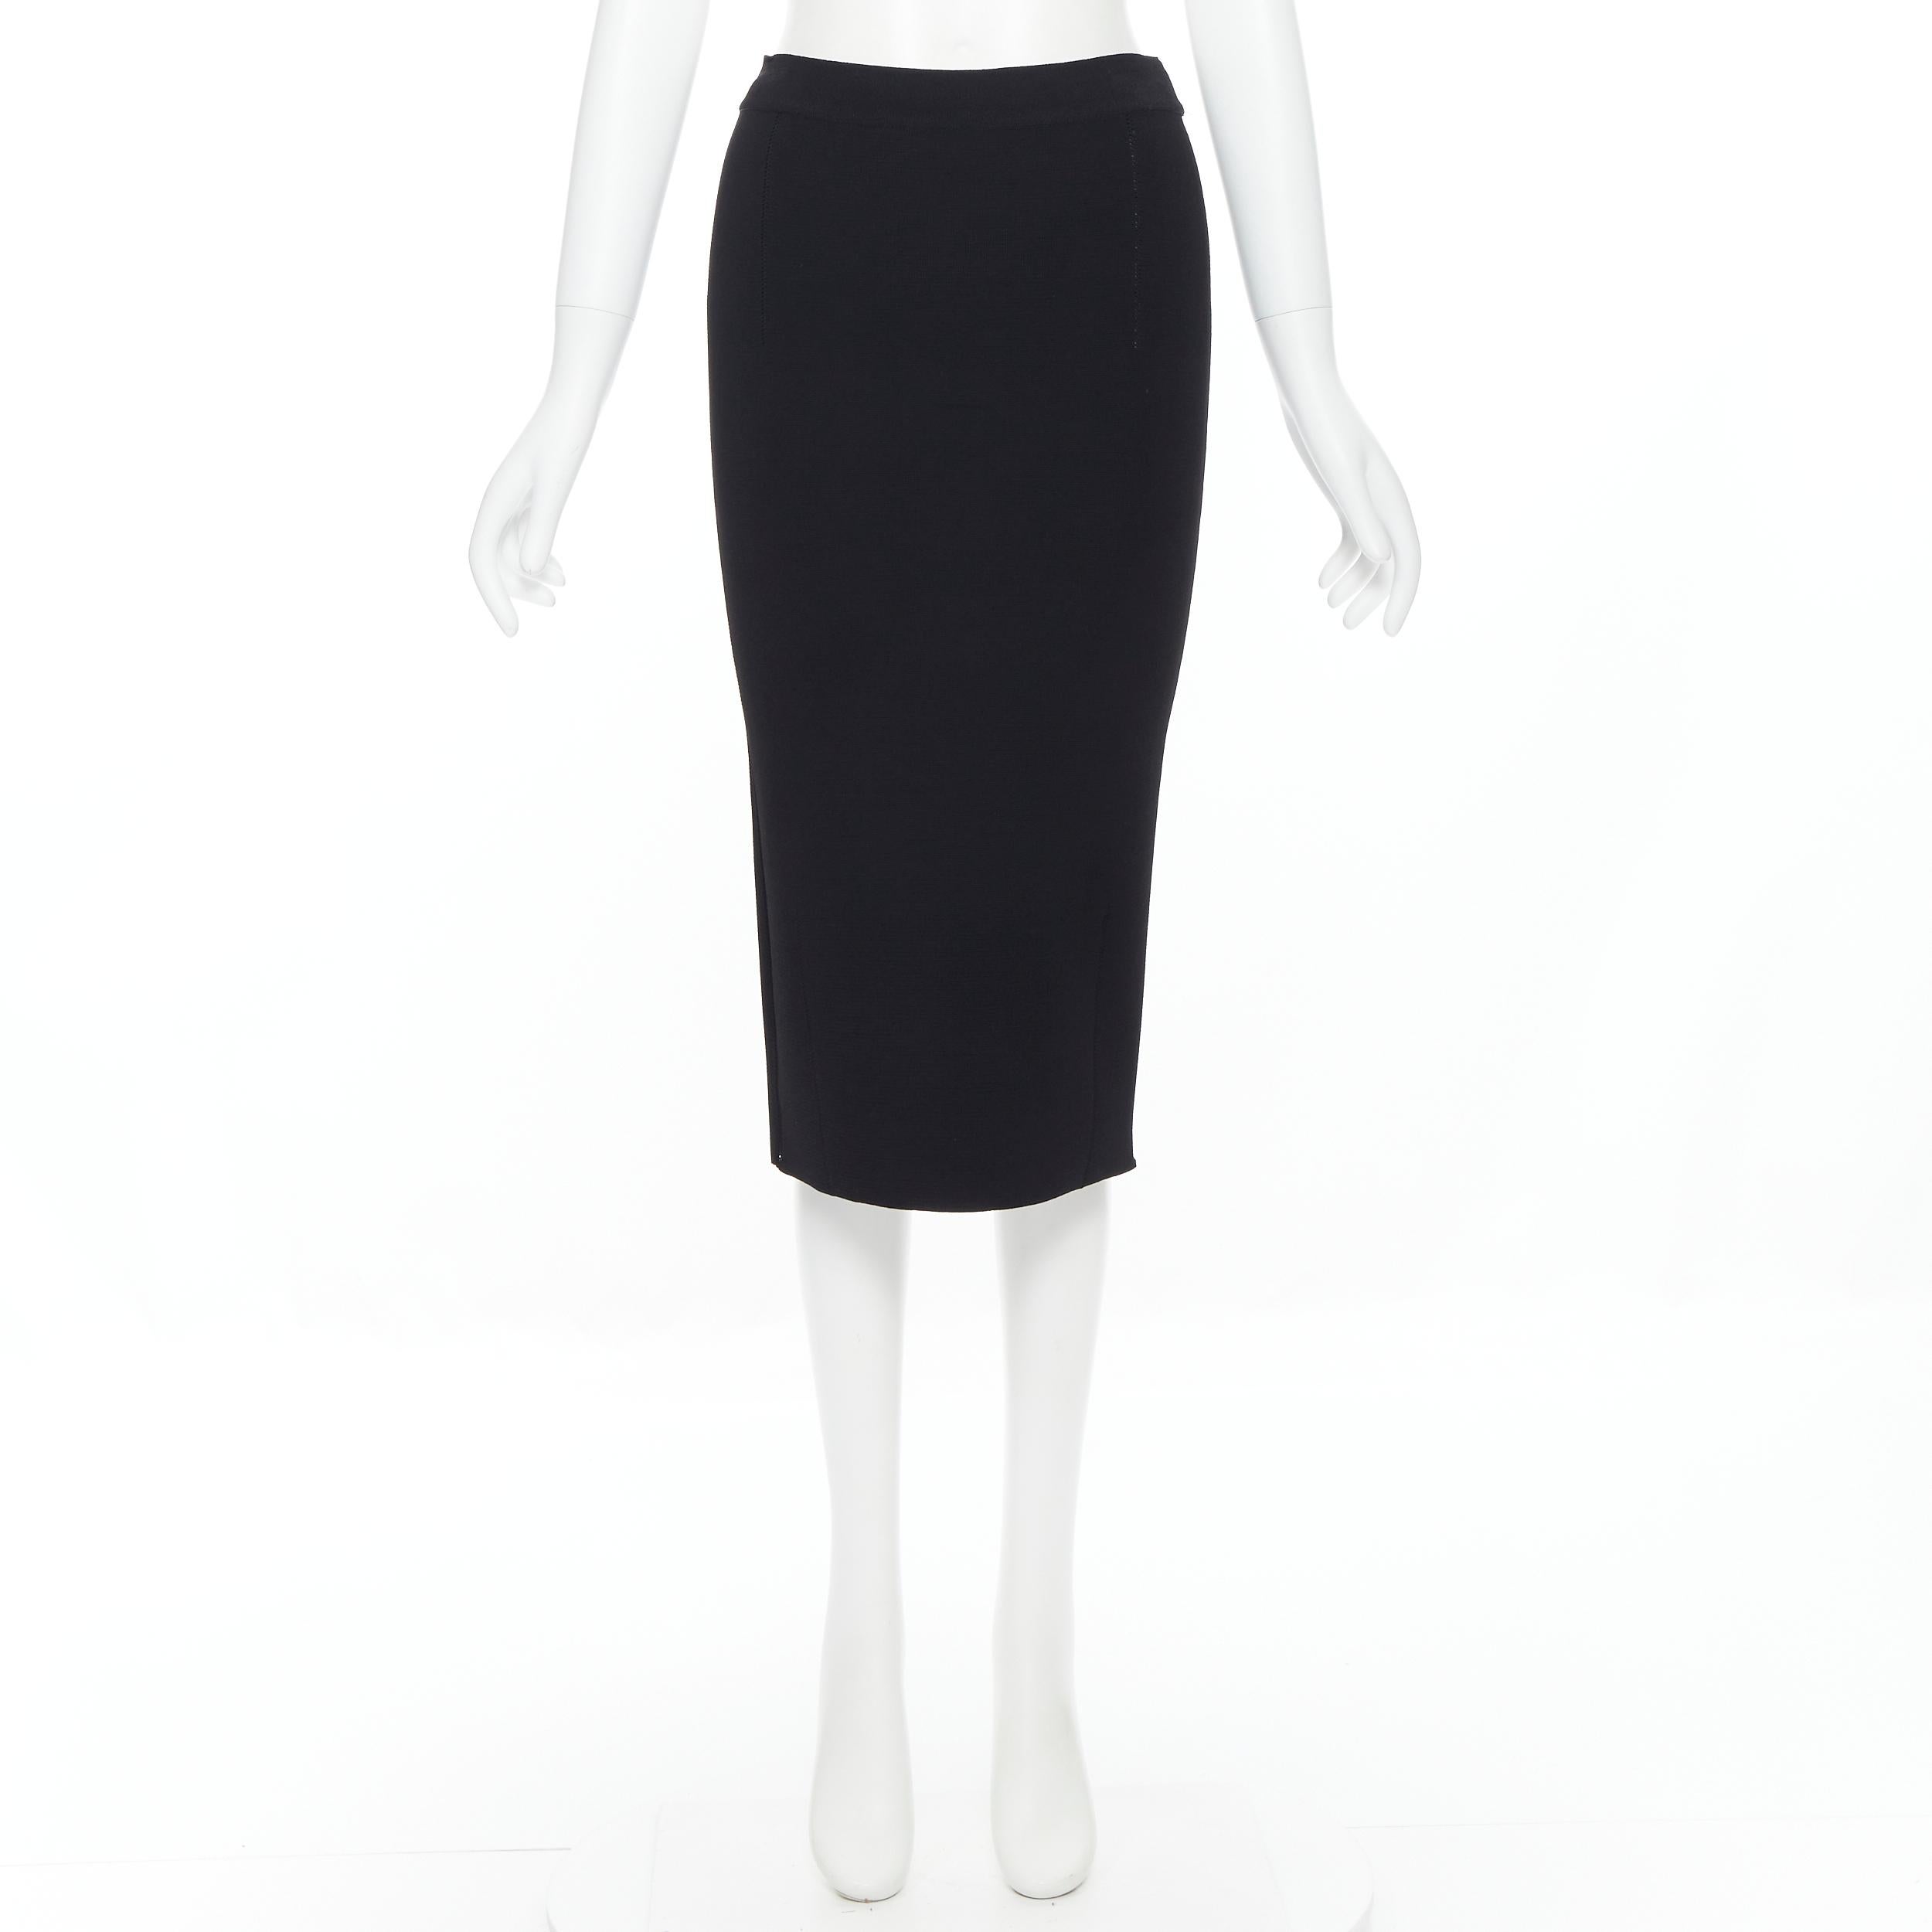 black knit skirt knee length